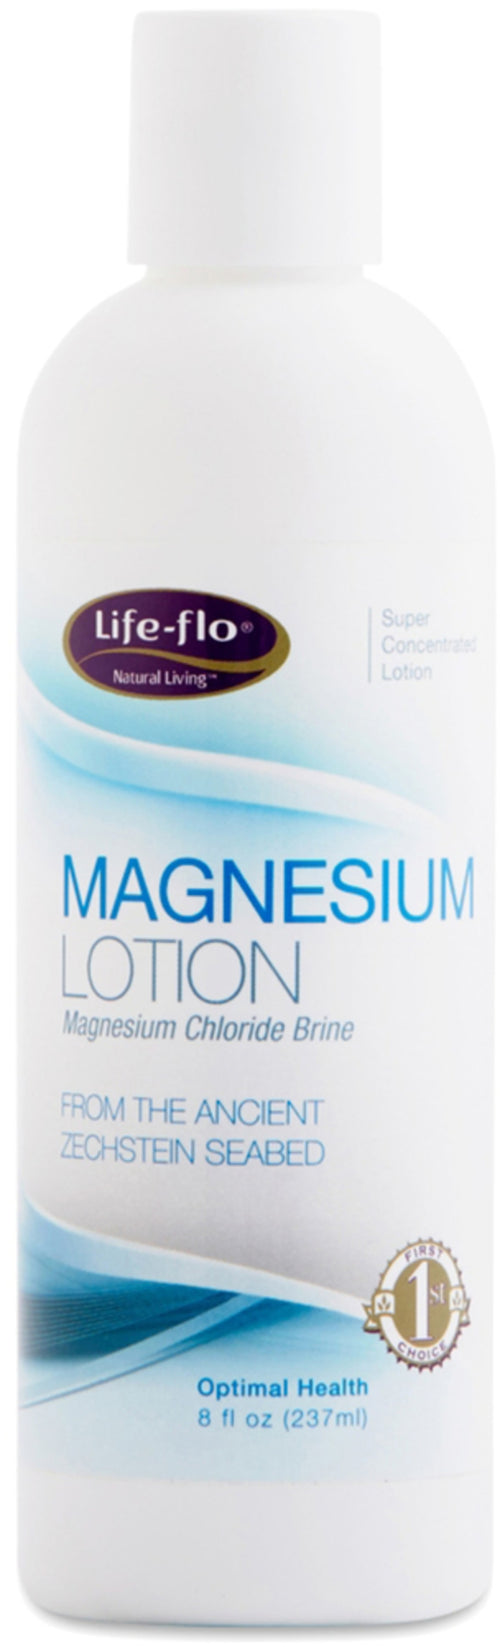 Magnesium Lotion 8 oz Flaske      